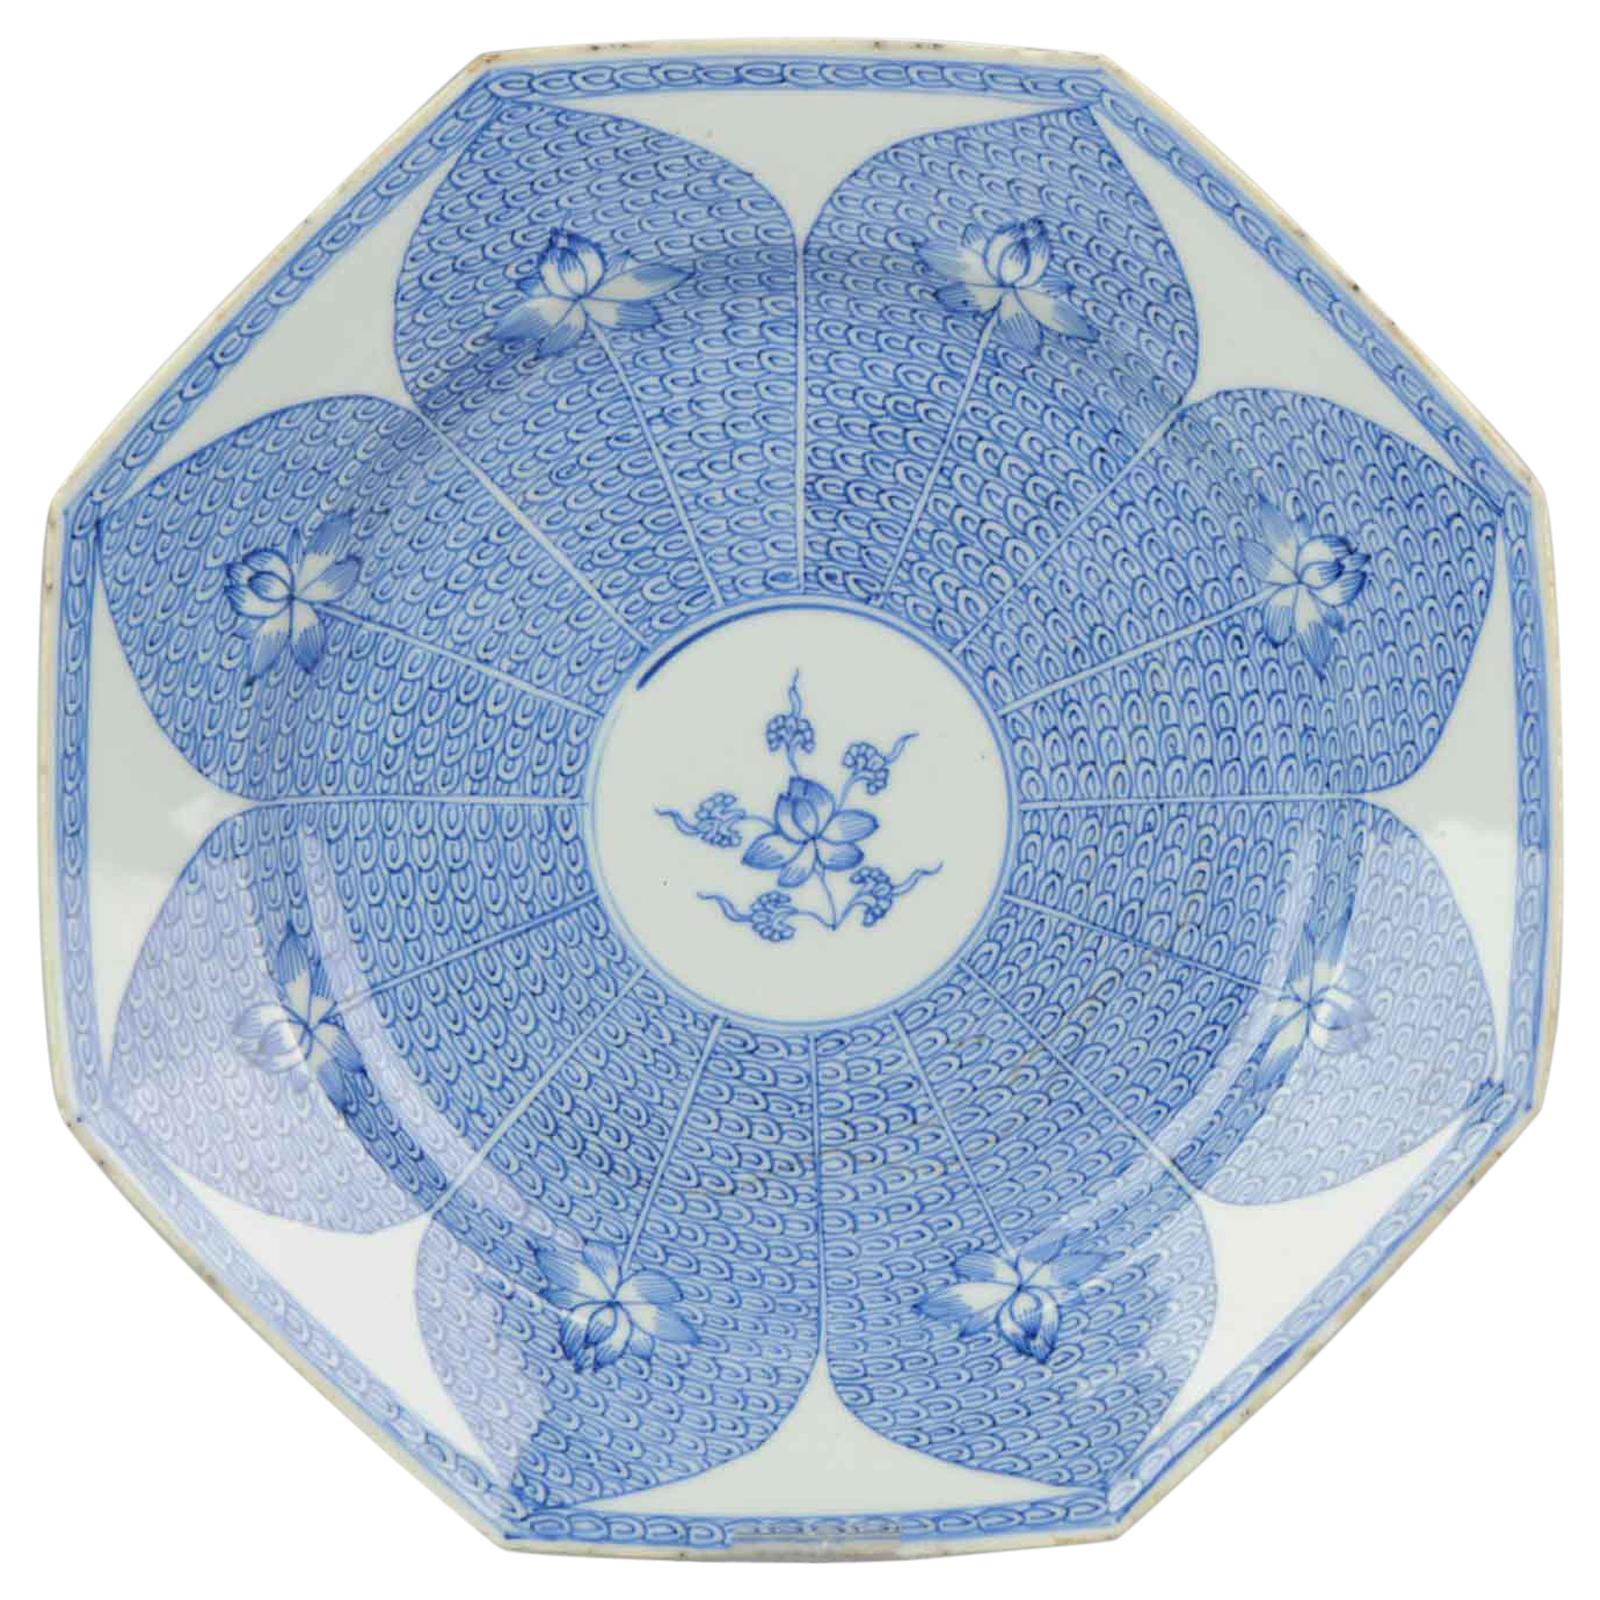 Assiette en porcelaine chinoise Qing du 18ème siècle Fleur de lotus octogonale bleue et blanche